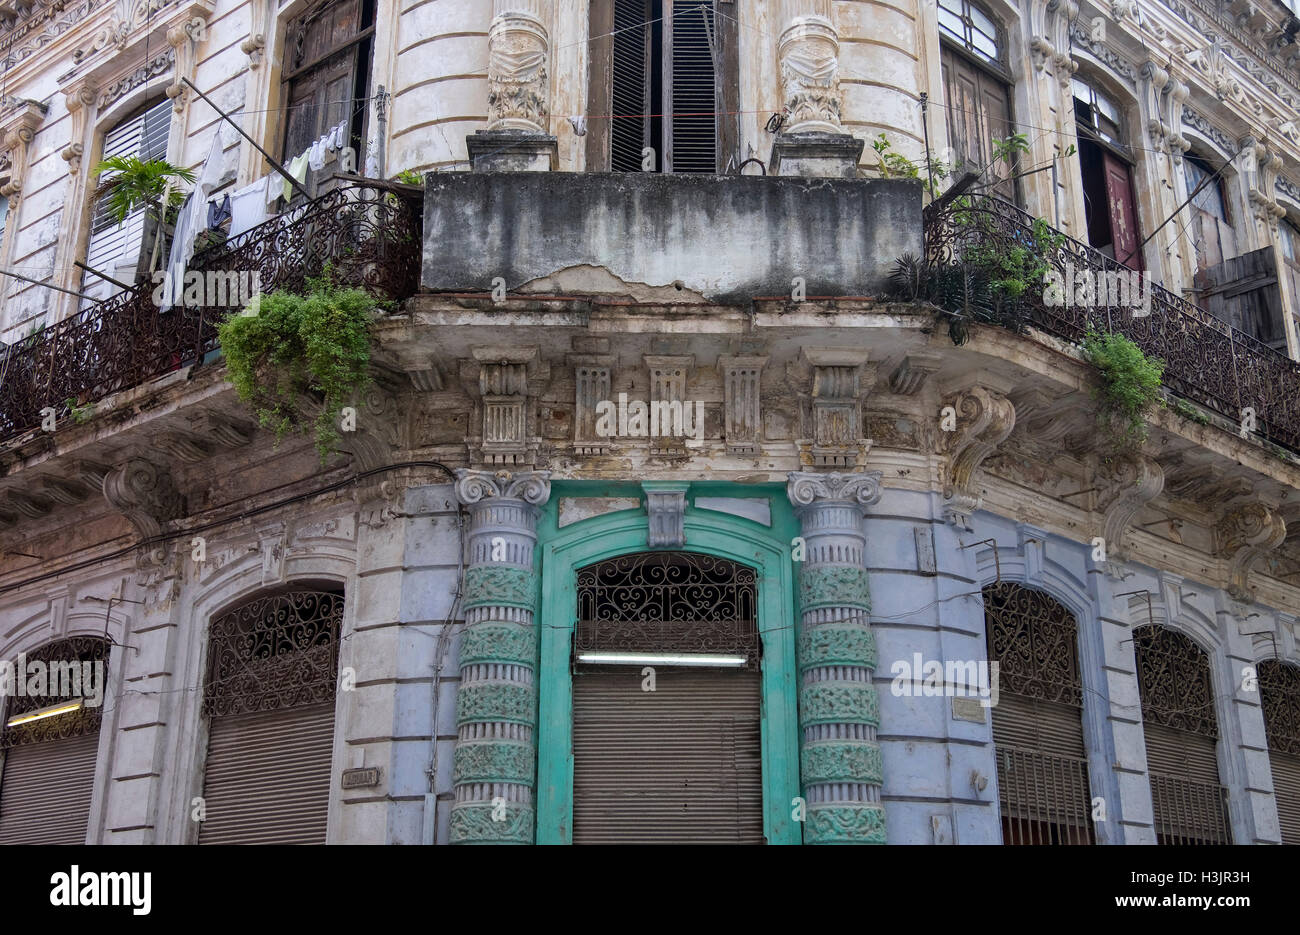 Typische Architektur in den Gassen der Altstadt von Havanna, Habana Vieja, Havanna, Kuba Stockfoto